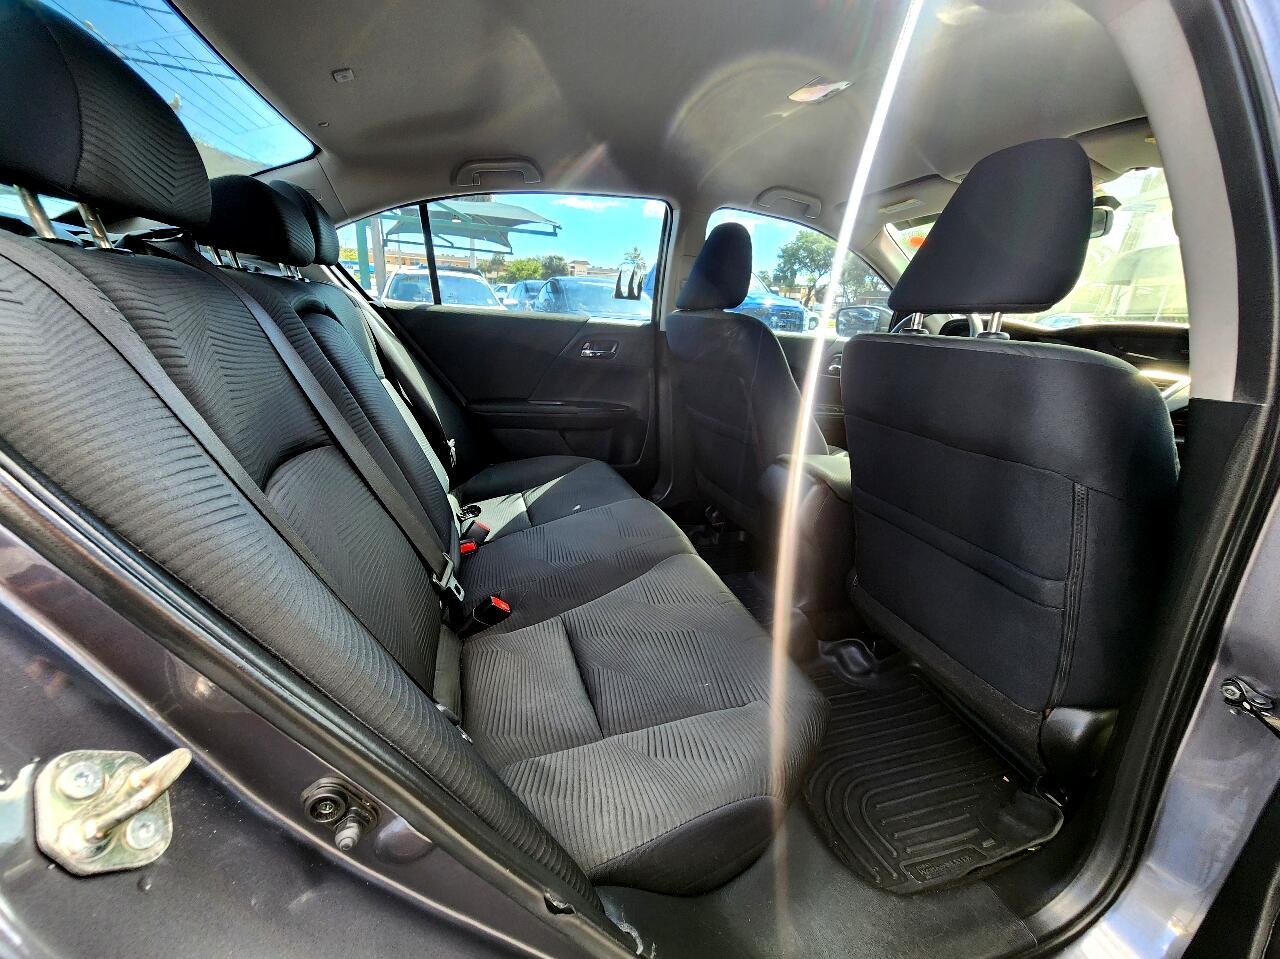 2017 HONDA Accord Sedan - $18,999